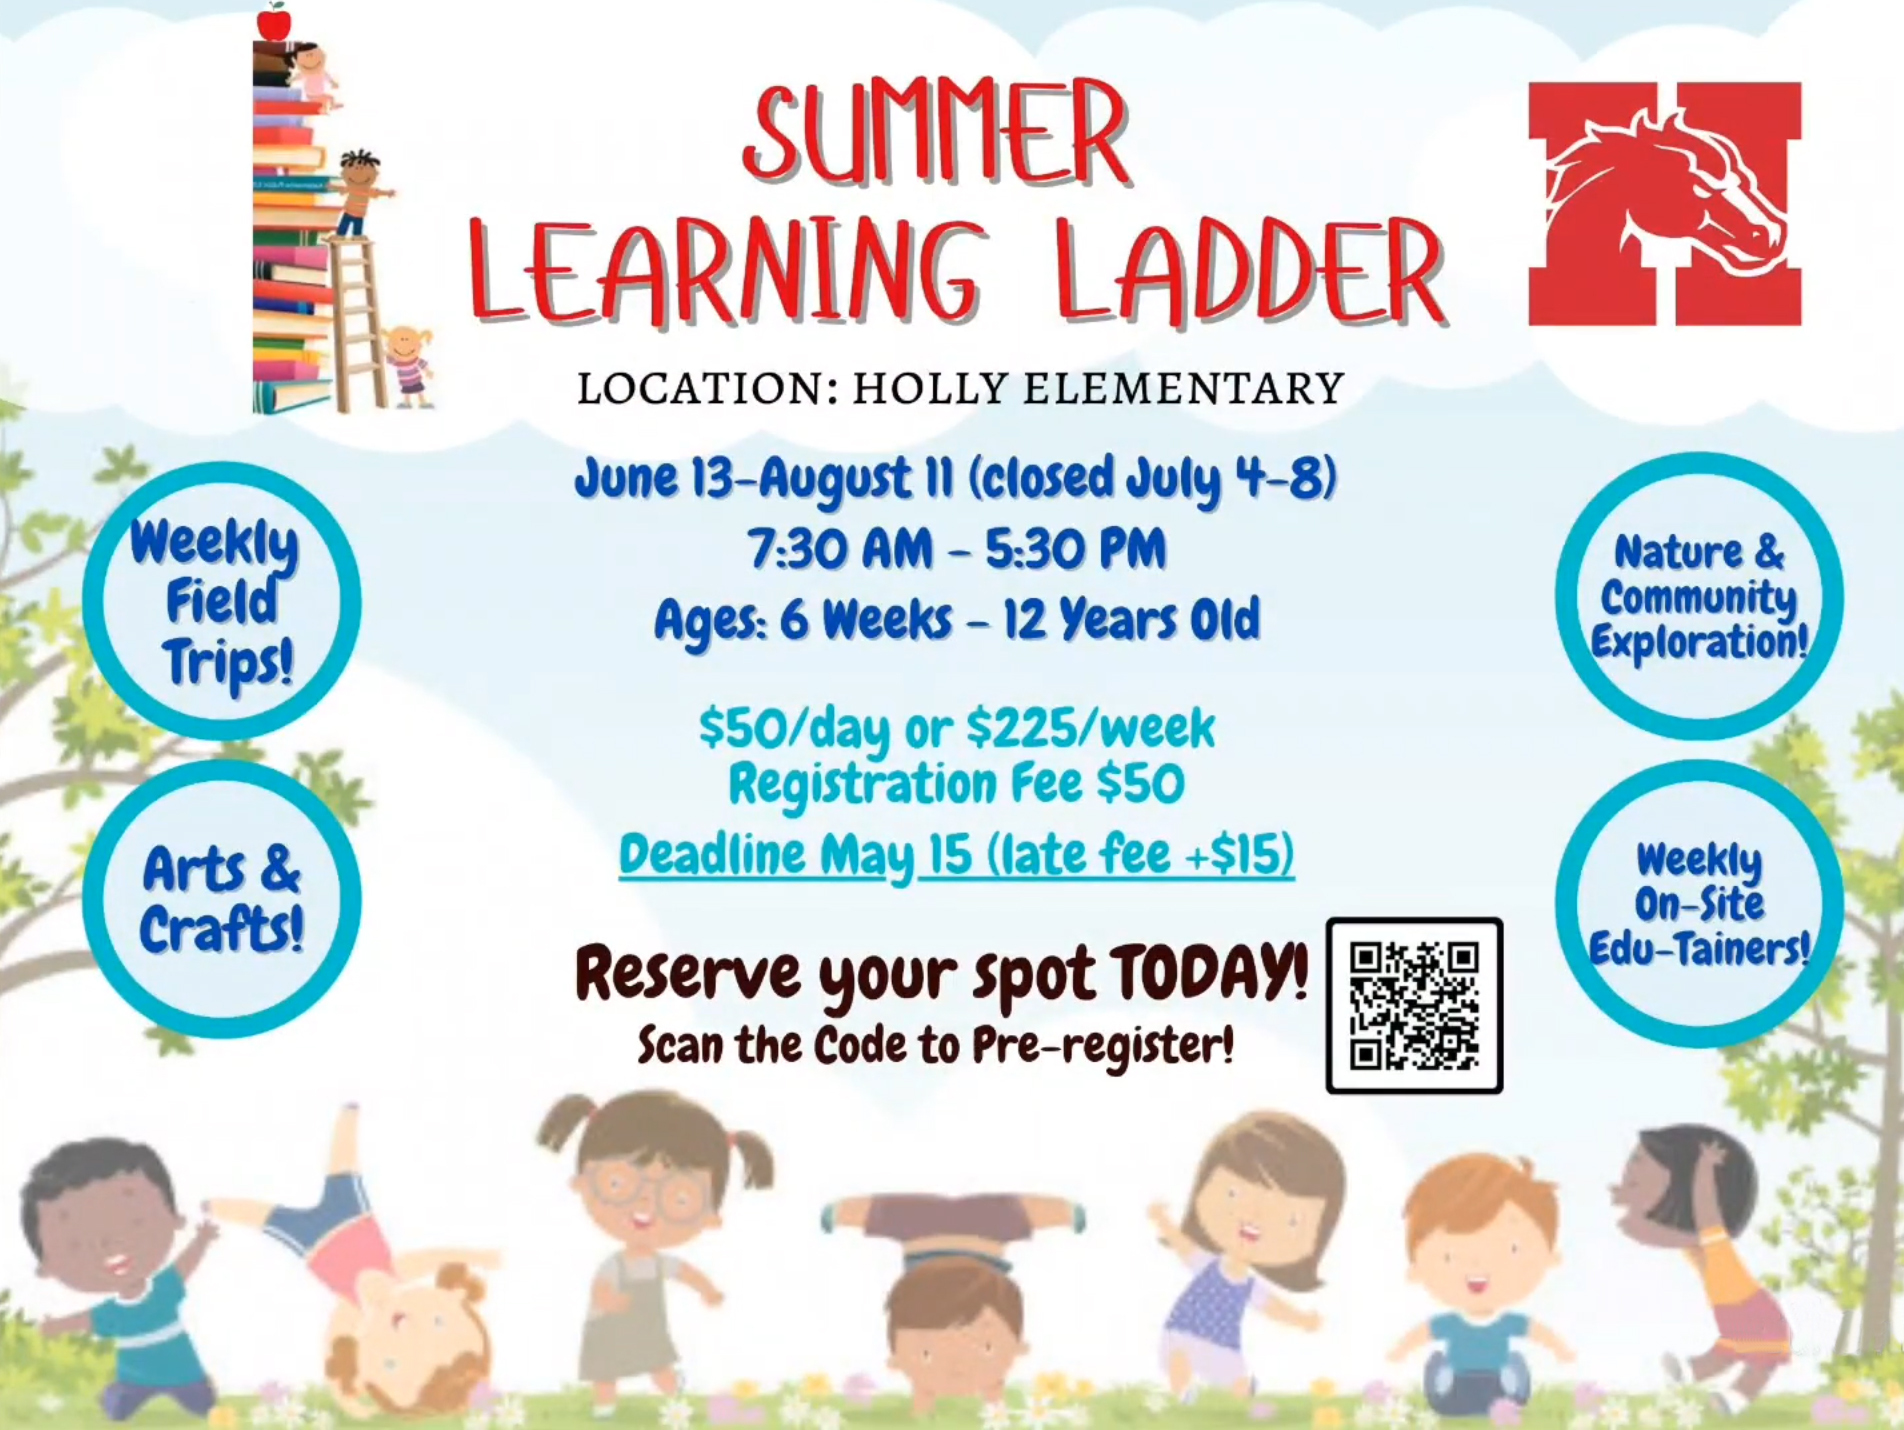 Summer Learning Ladder Flyer Image